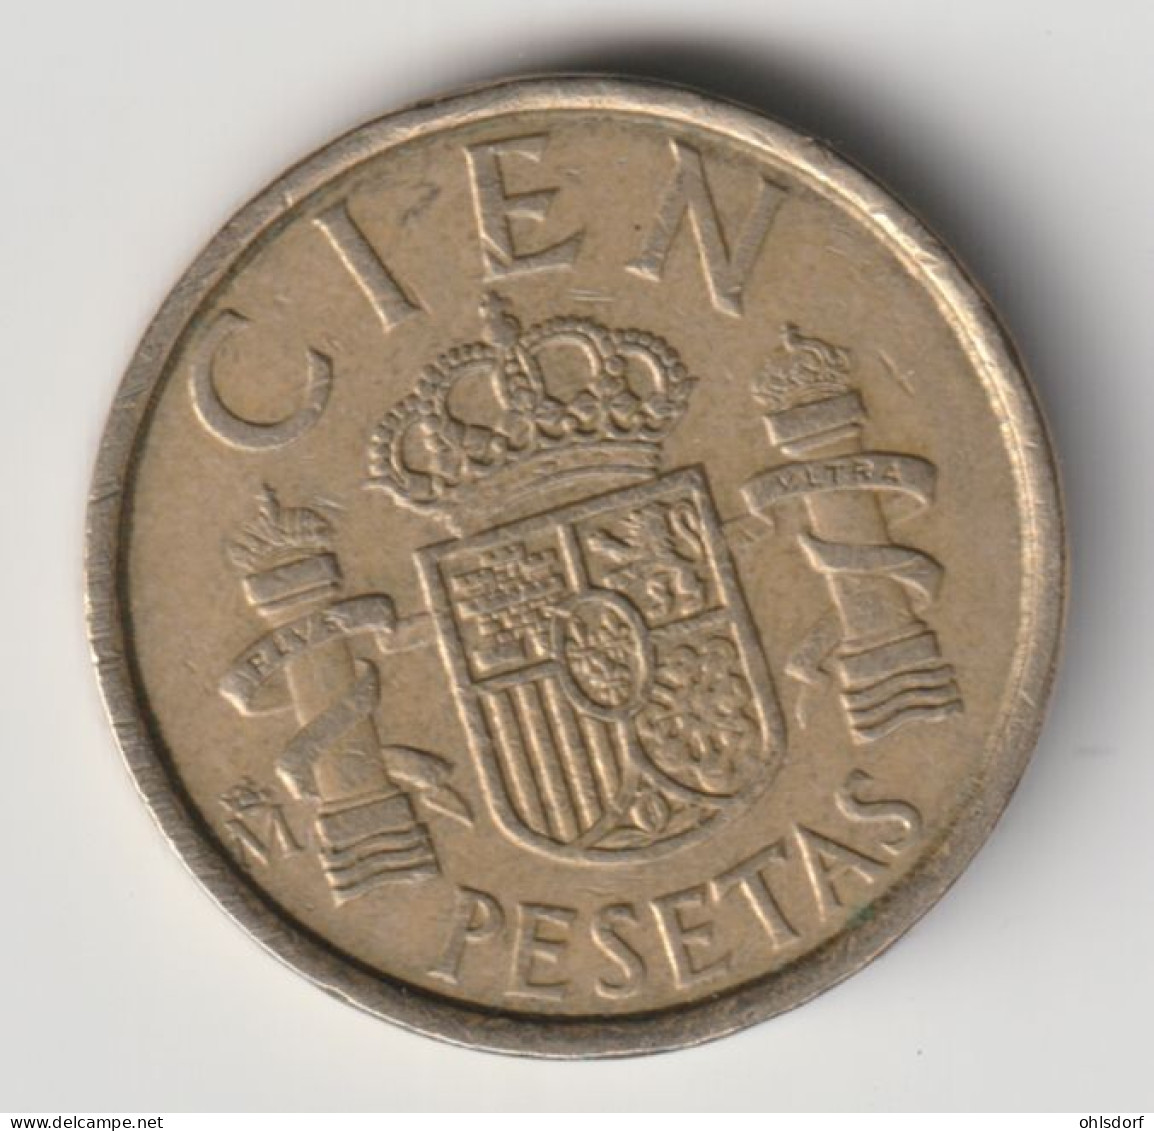 ESPANA 1986: 100 Pesetas, KM 826 - 100 Peseta